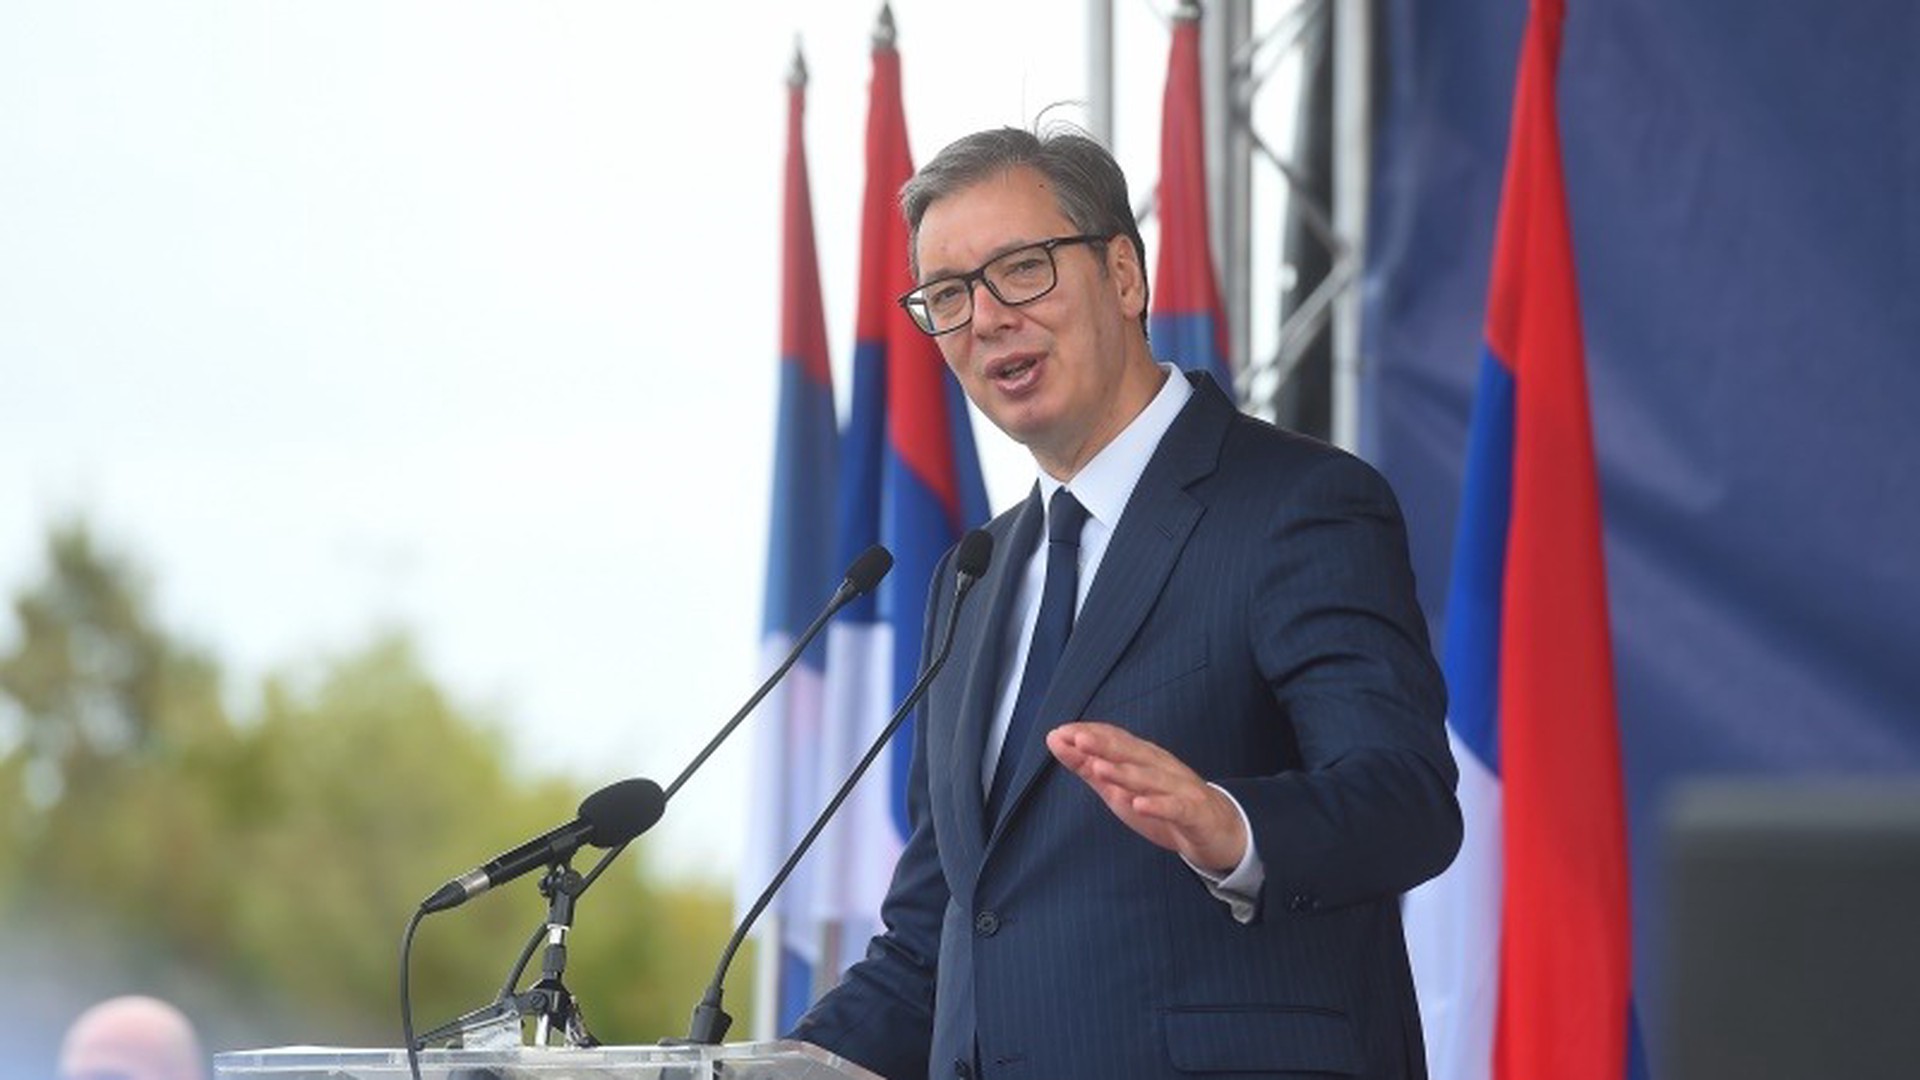 Вучич подтвердил, что вступление в Евросоюз является приоритетом для Сербии